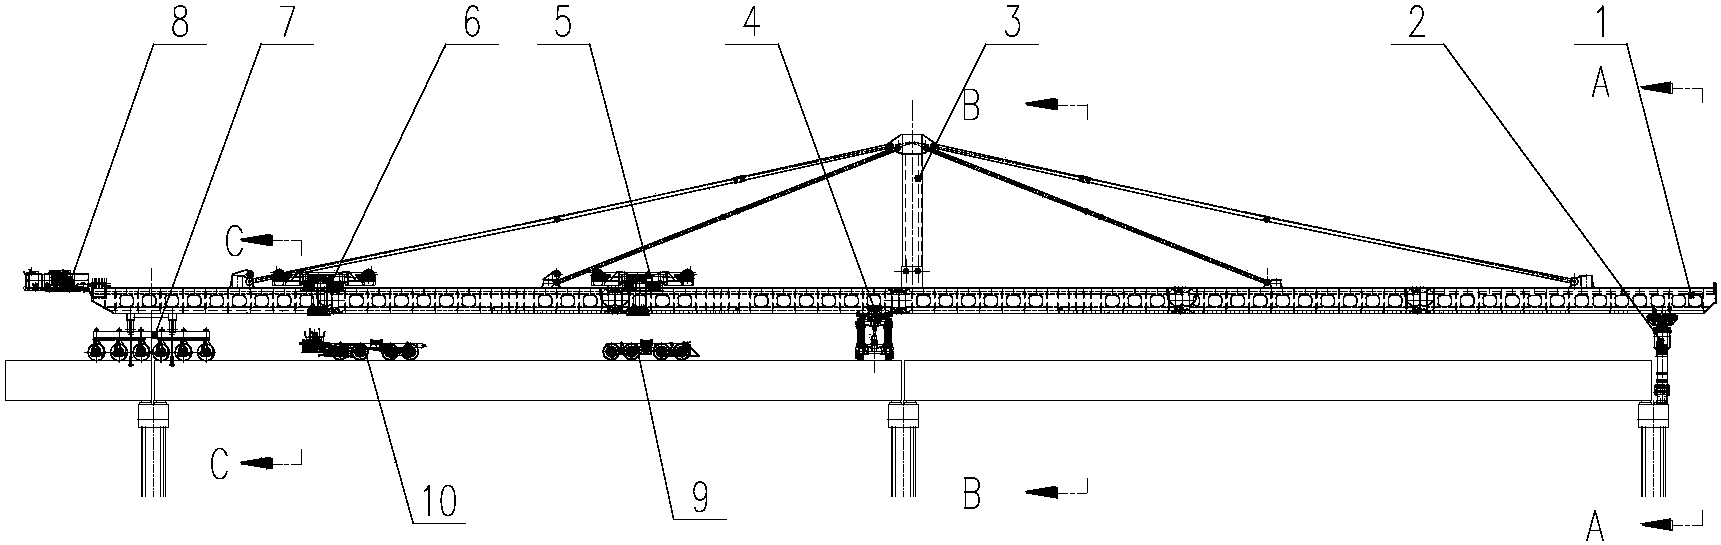 架桥机结构图图片